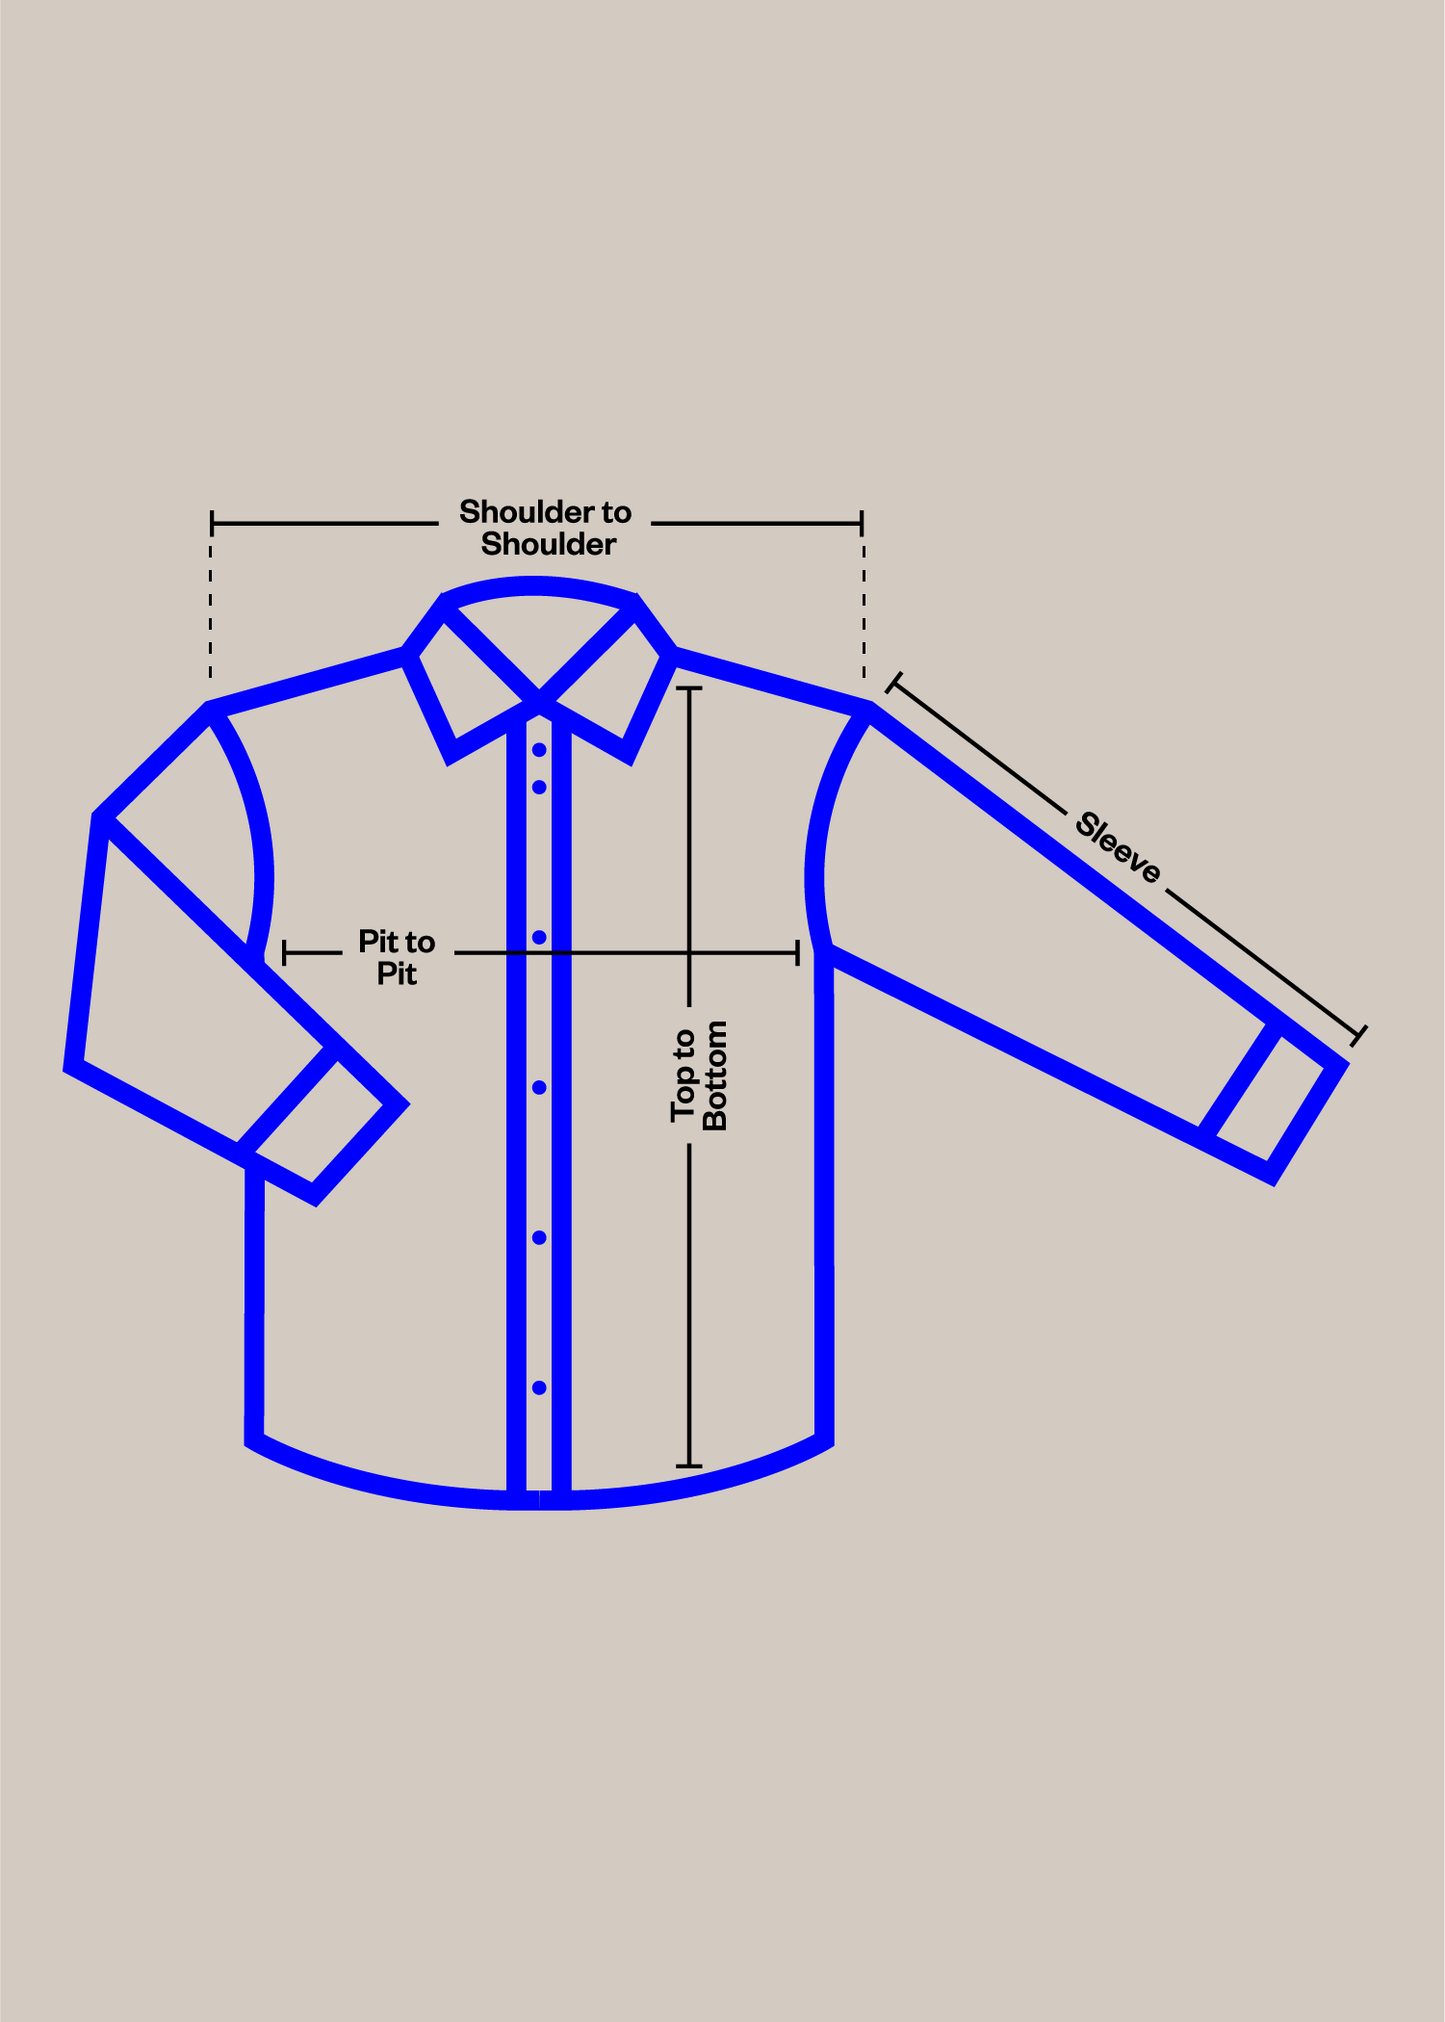 1980s French Workwear Chore Jacket Size S/M